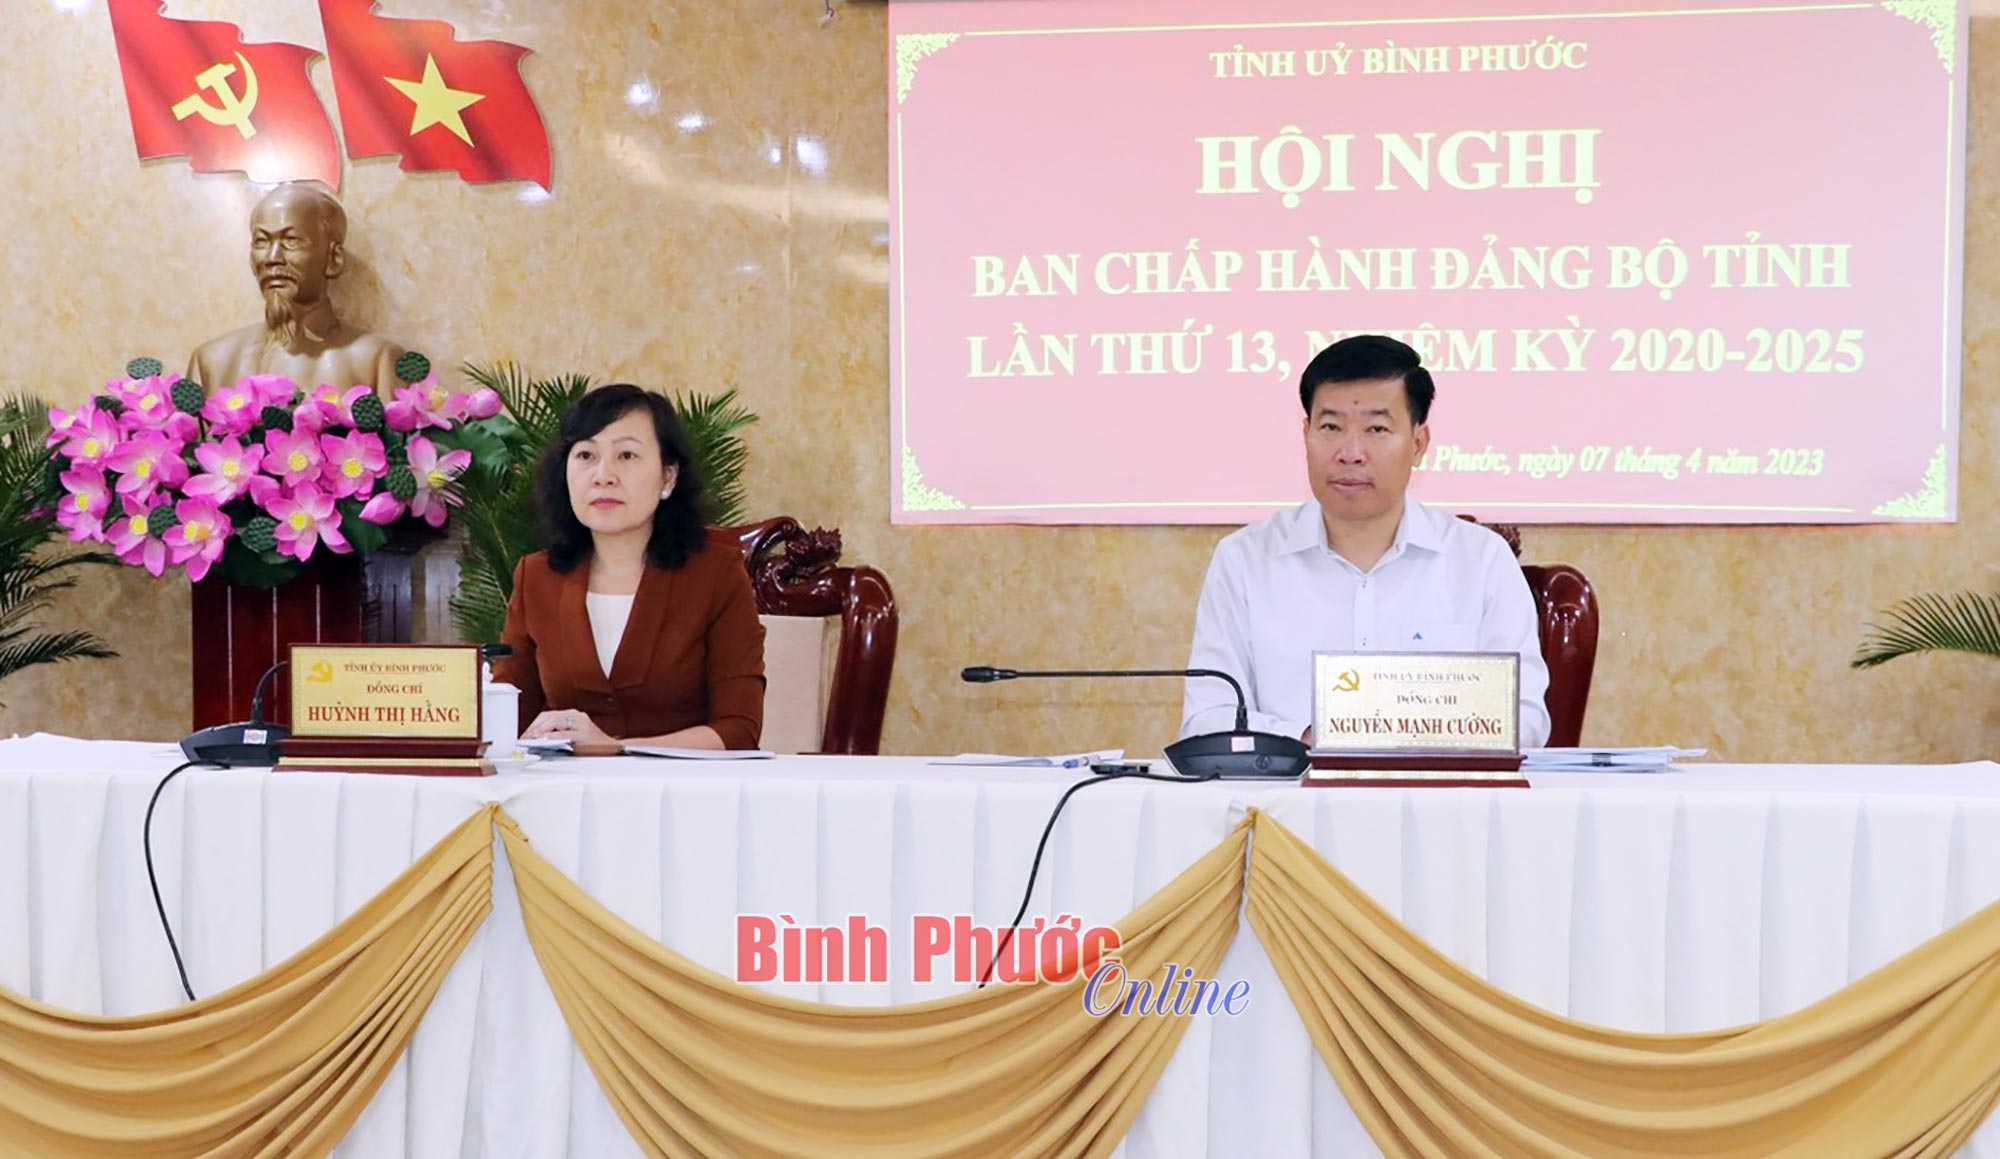 Hội nghị Ban Chấp hành Đảng bộ tỉnh Bình Phước lần thứ 13 thảo luận nhiều nội dung quan trọng